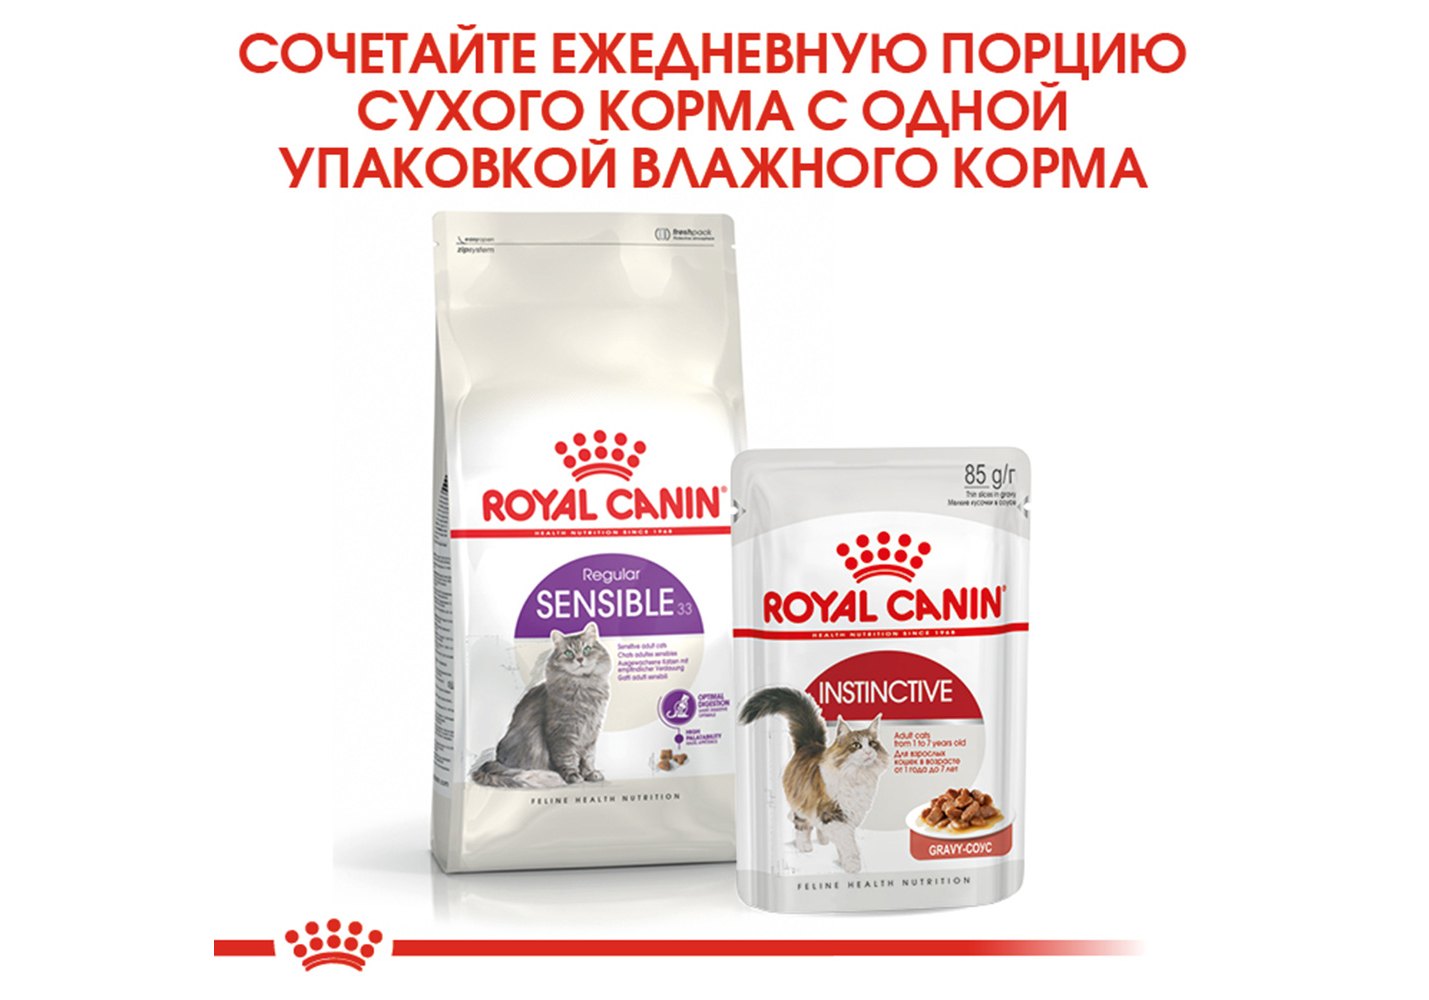 Royal Canin Sensible / Сухой корм Роял Канин Сенсибл для кошек с  Чувствительным пищеварением 400 г купить в Москве по низкой цене 420₽ |  интернет-магазин ZooMag.ru